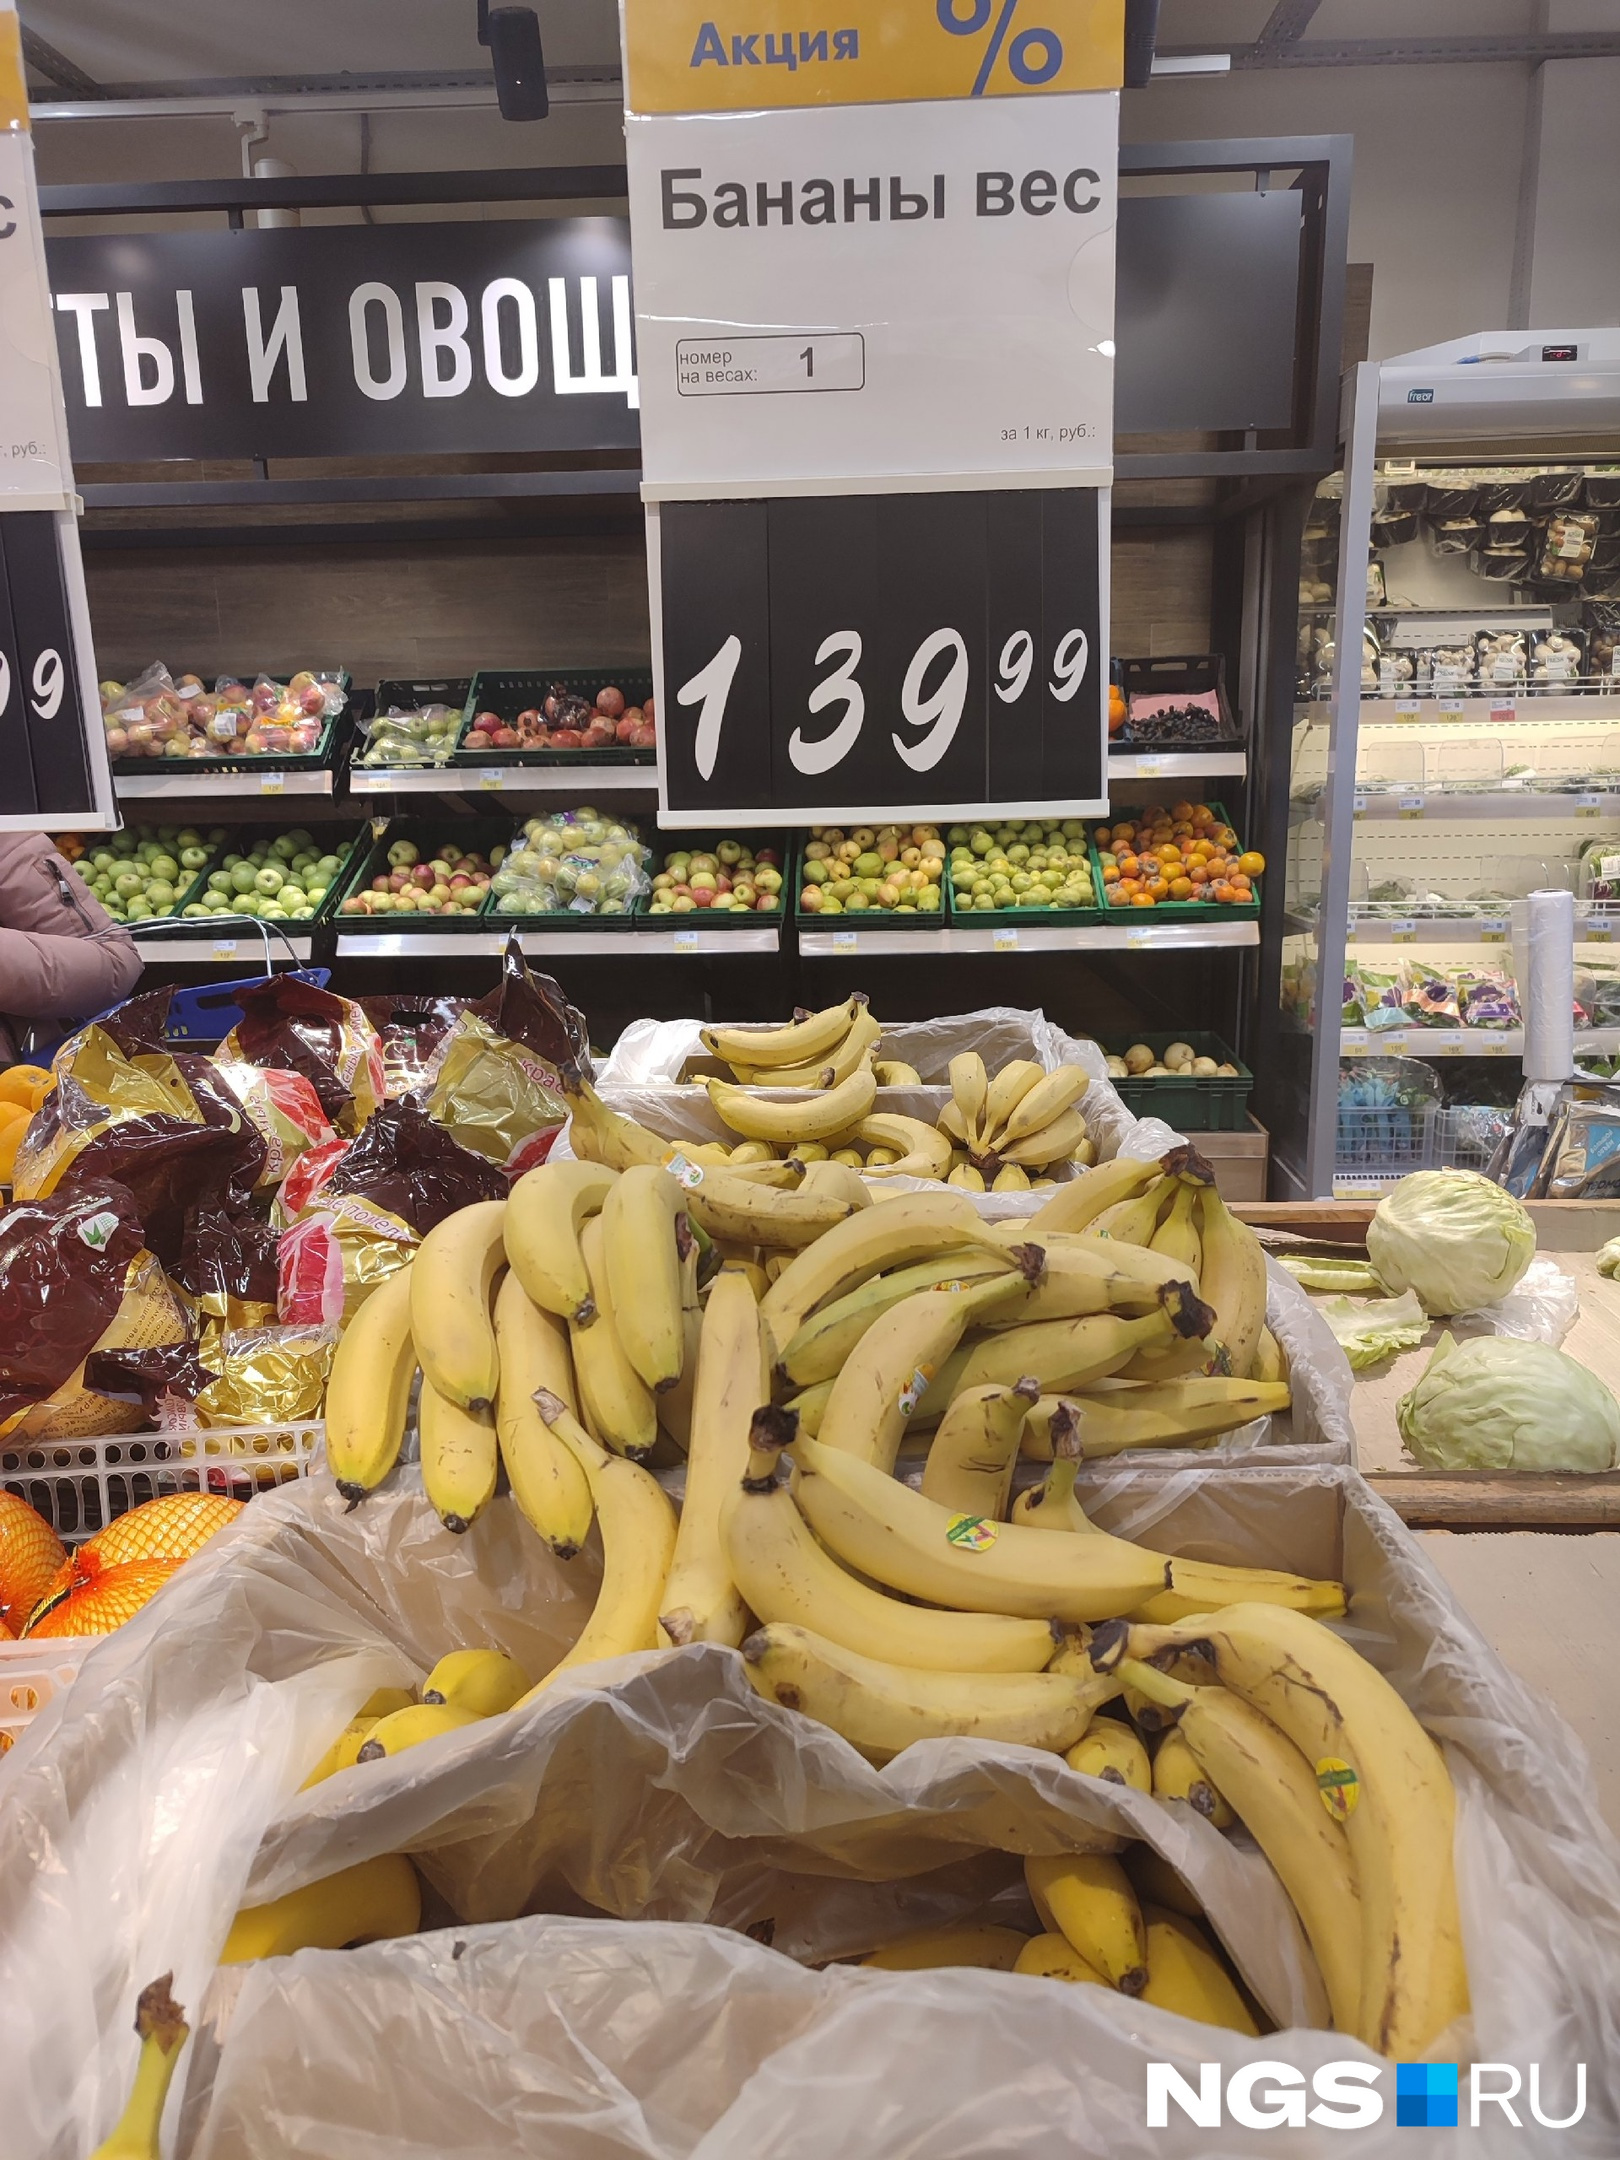 В «Ленте» за 1 килограмм бананов просят столько же, сколько в «Ярче!»